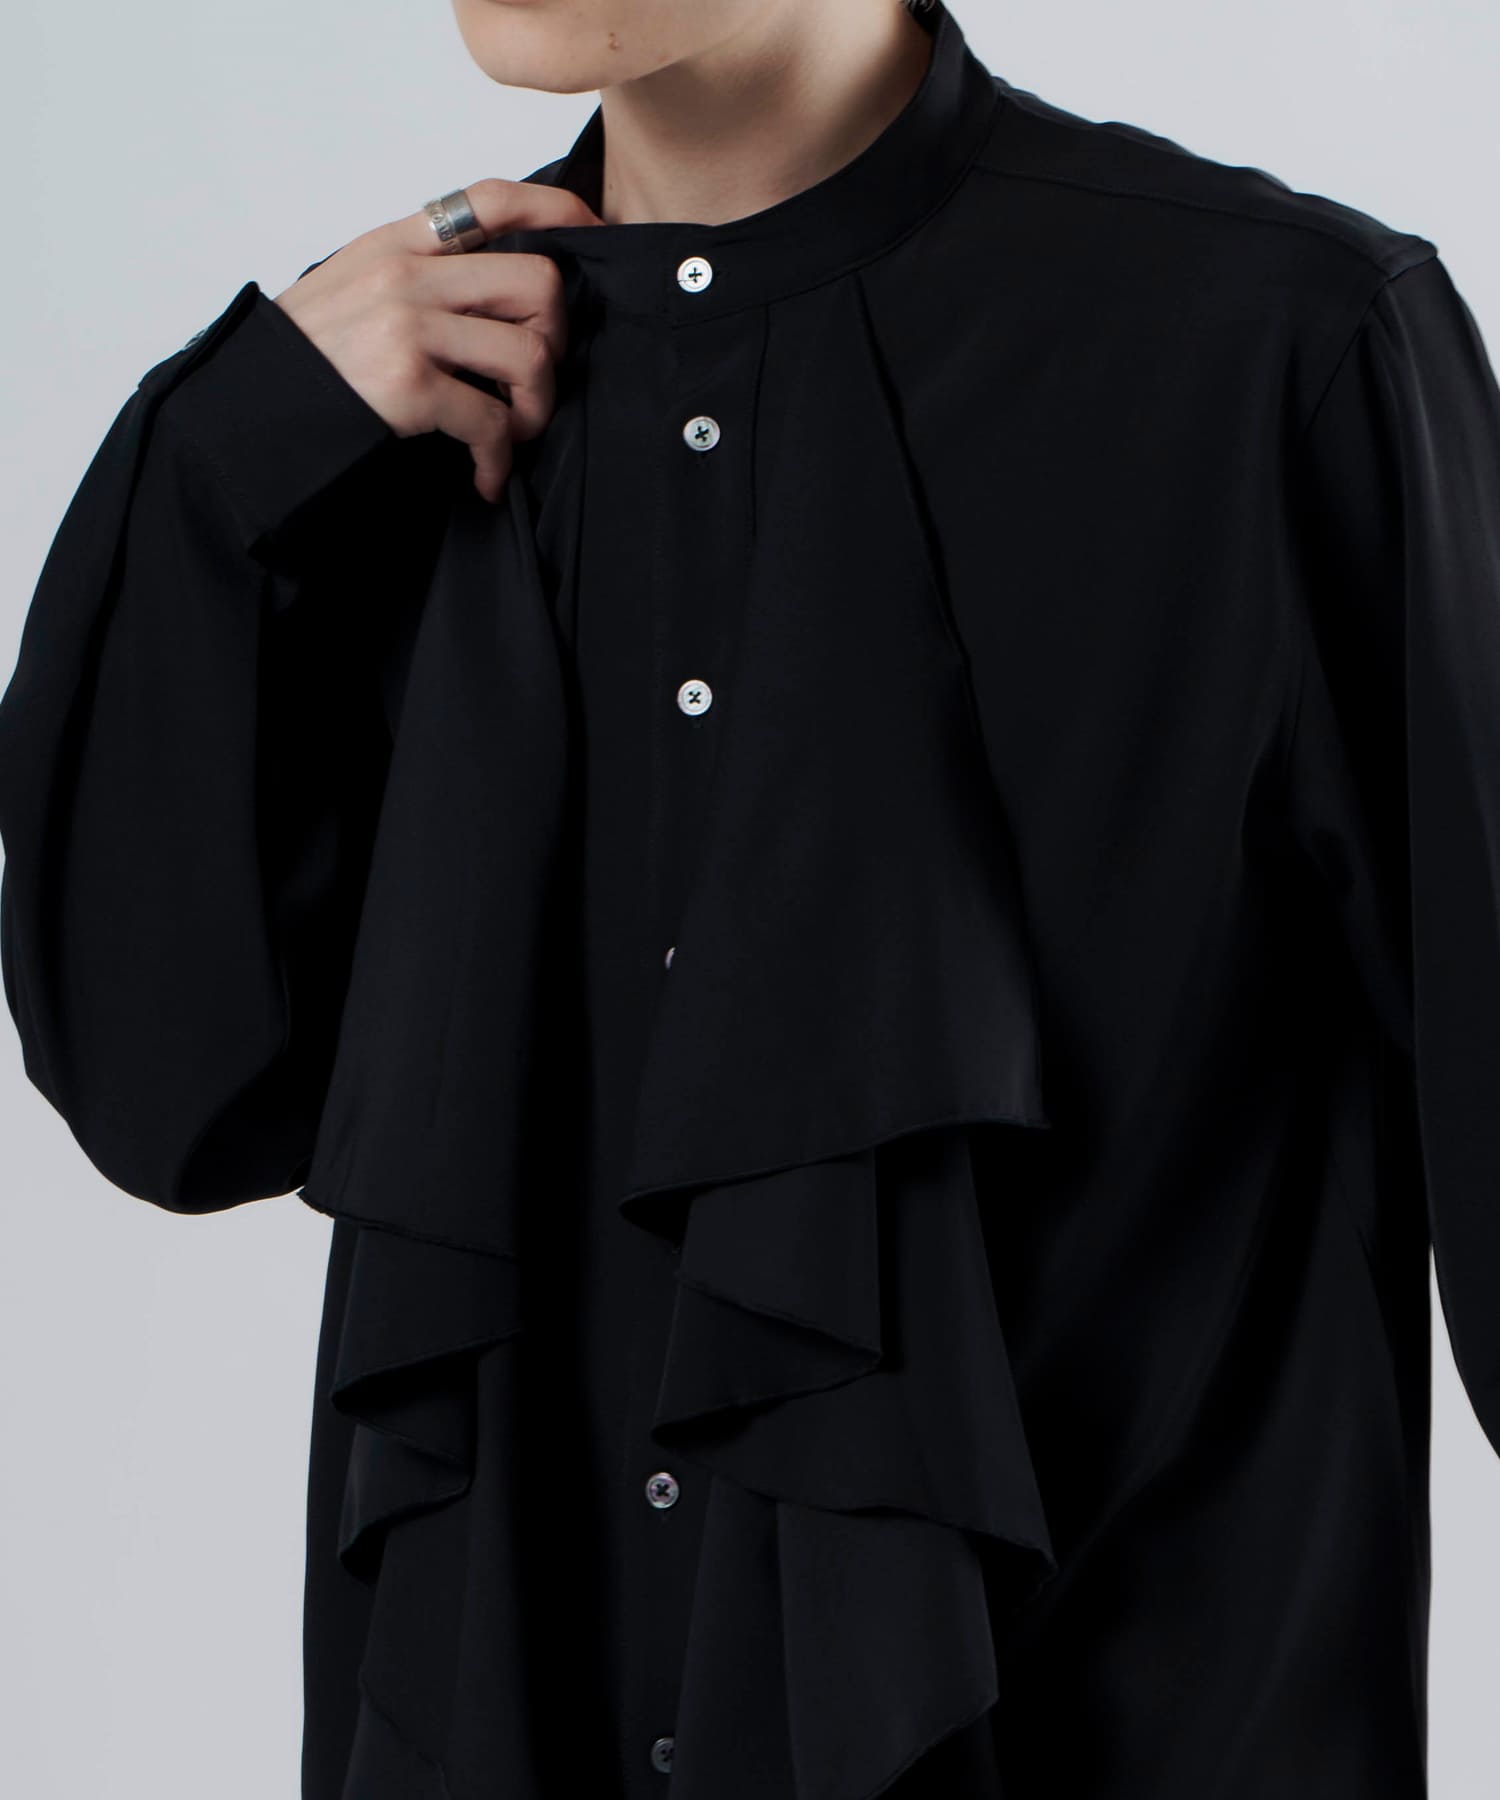 着丈約108cmNOT CONVENTIONAL separate shirt ブラック - シャツ